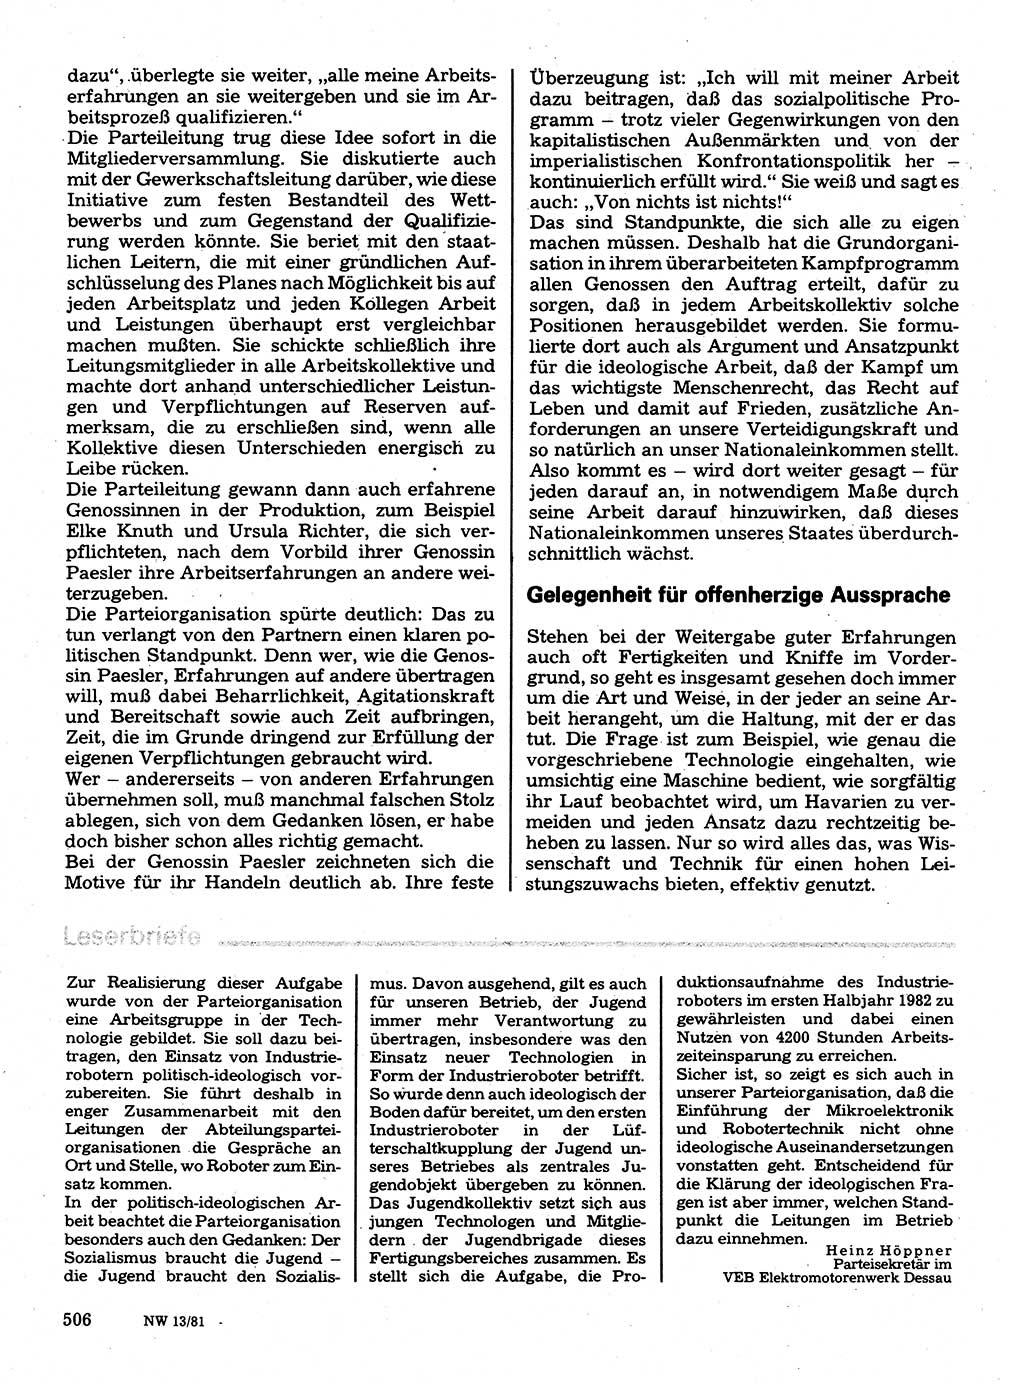 Neuer Weg (NW), Organ des Zentralkomitees (ZK) der SED (Sozialistische Einheitspartei Deutschlands) für Fragen des Parteilebens, 36. Jahrgang [Deutsche Demokratische Republik (DDR)] 1981, Seite 506 (NW ZK SED DDR 1981, S. 506)